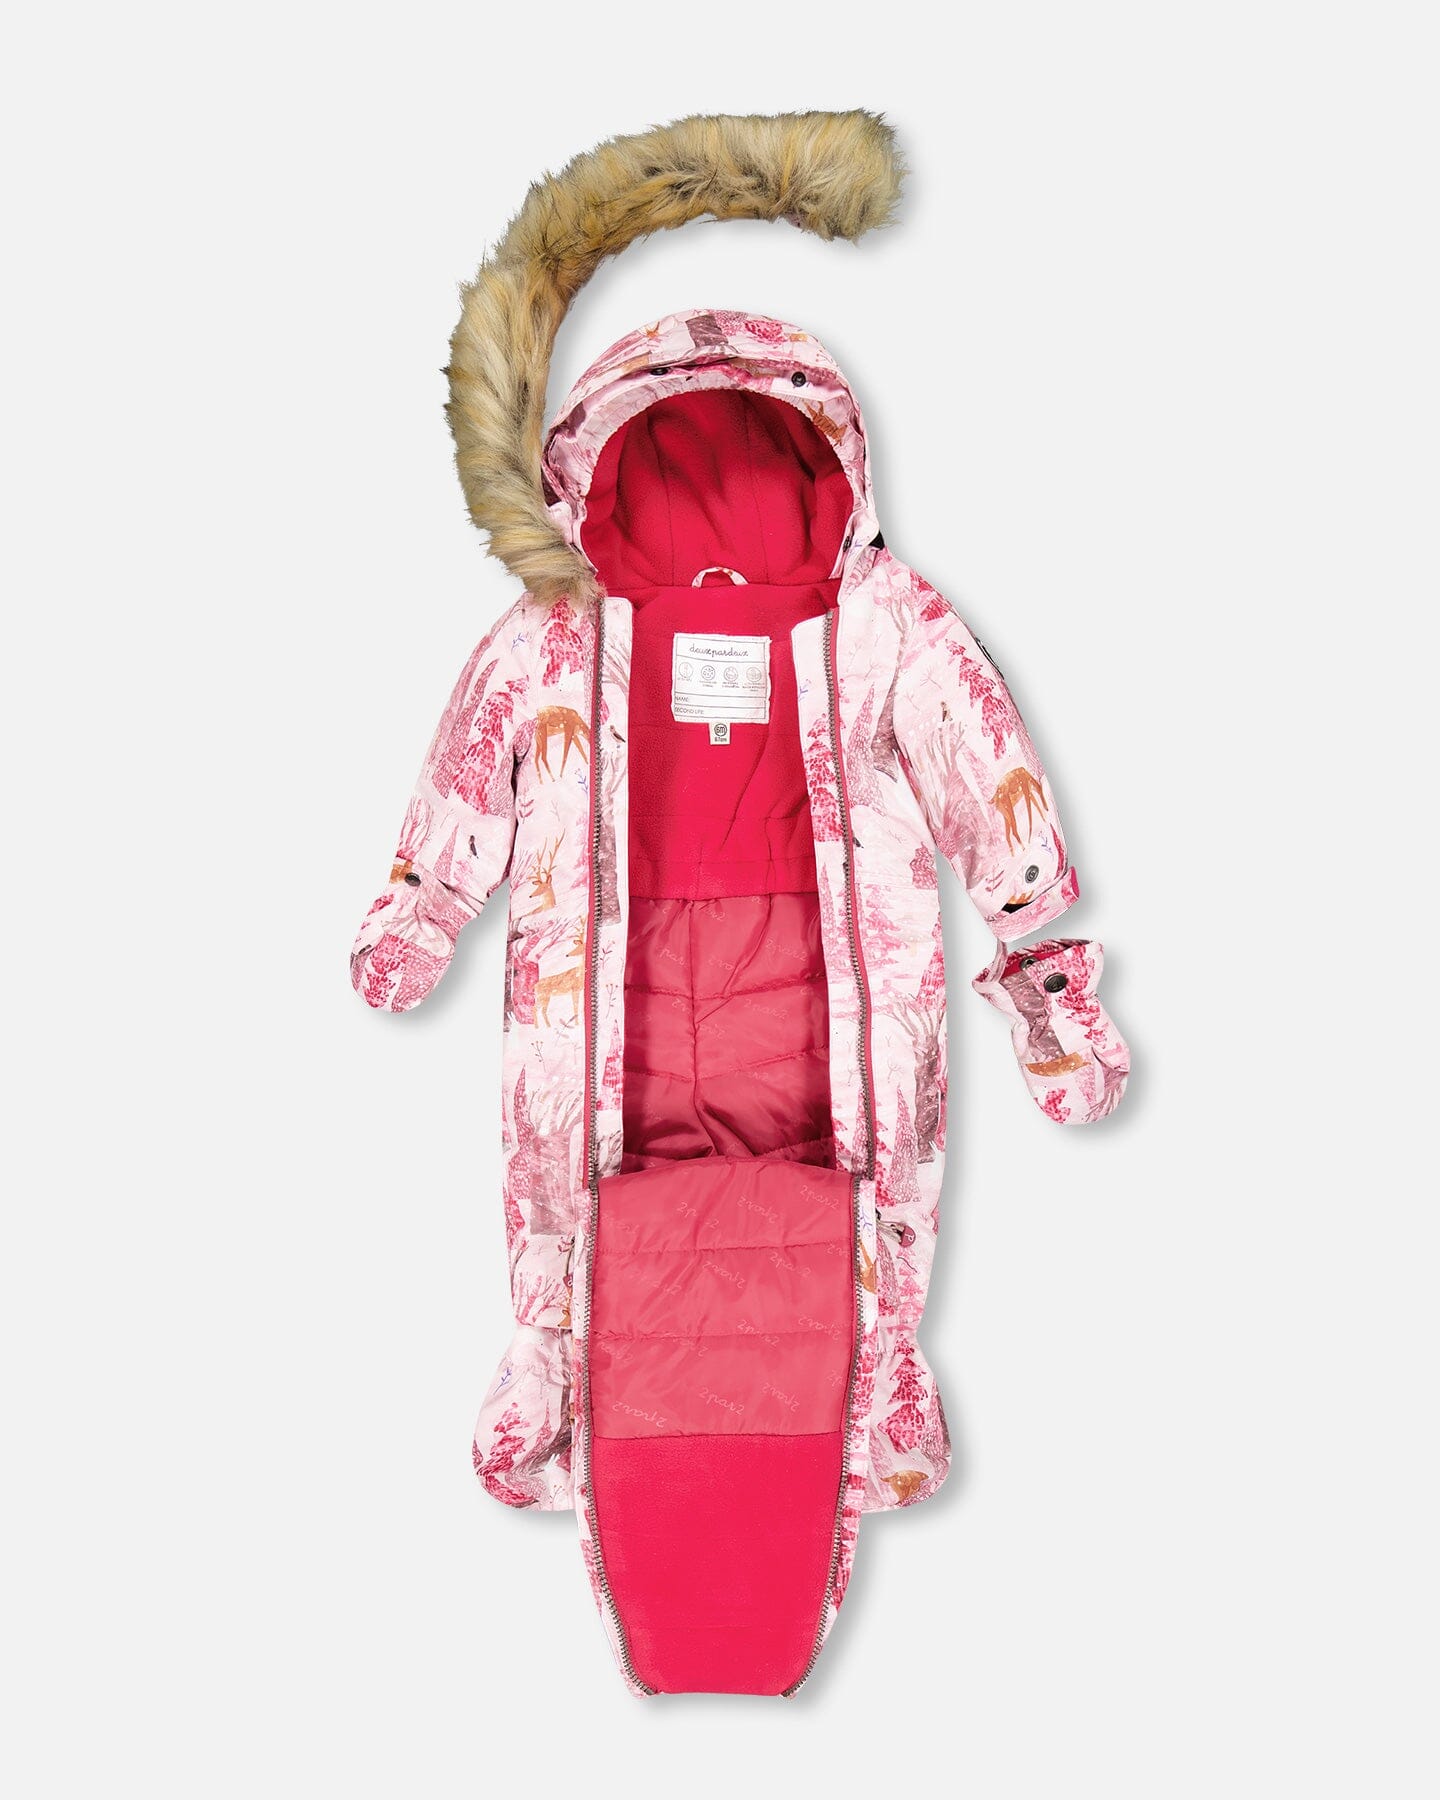 One Piece Baby Car Seat Snowsuit With Snowy Forest Print Snowsuits Deux par Deux 